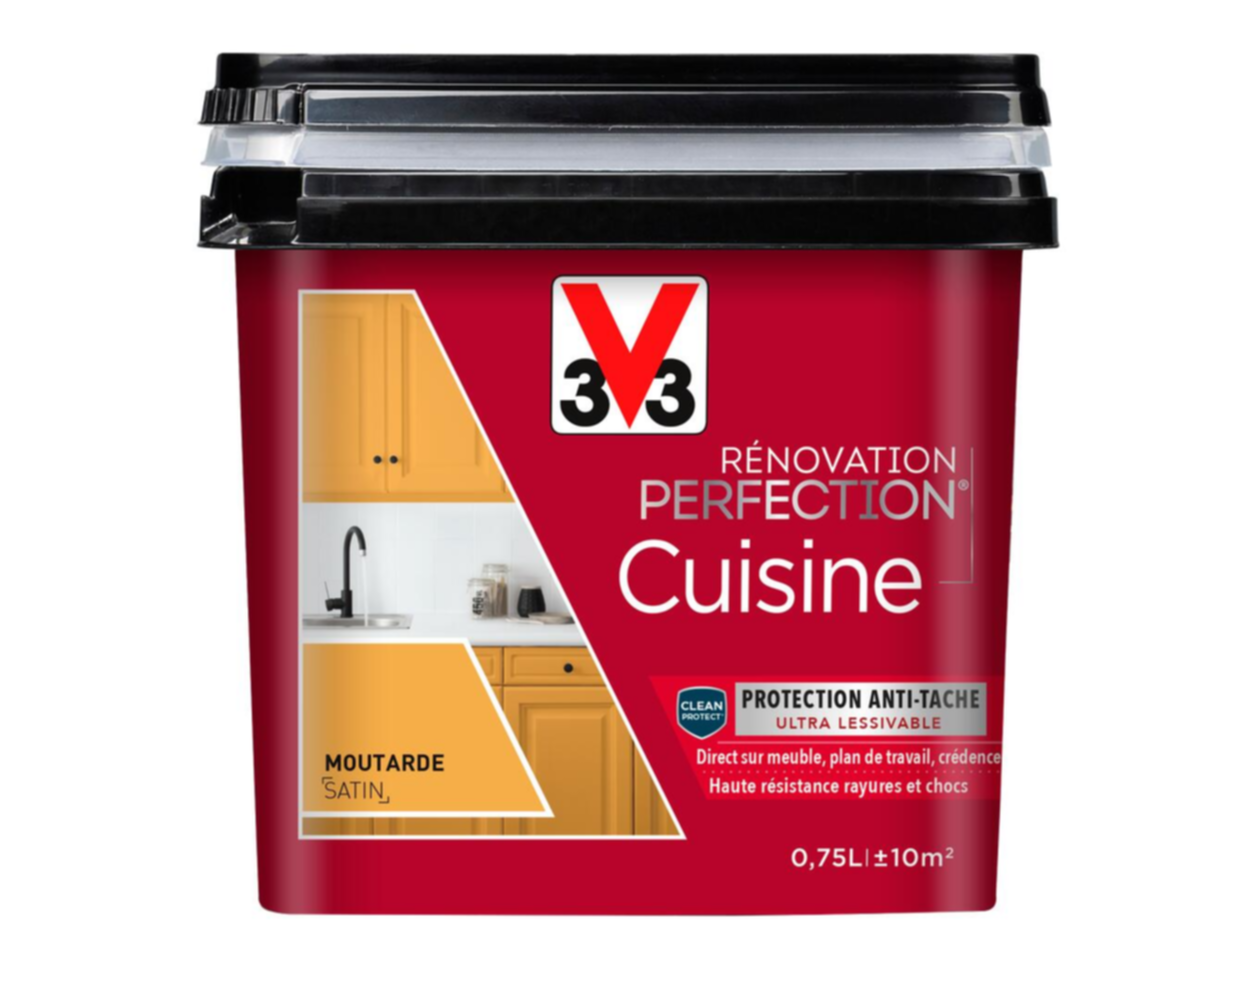 Peinture rénovation cuisine Perfection moutarde satin 0,75l - V33